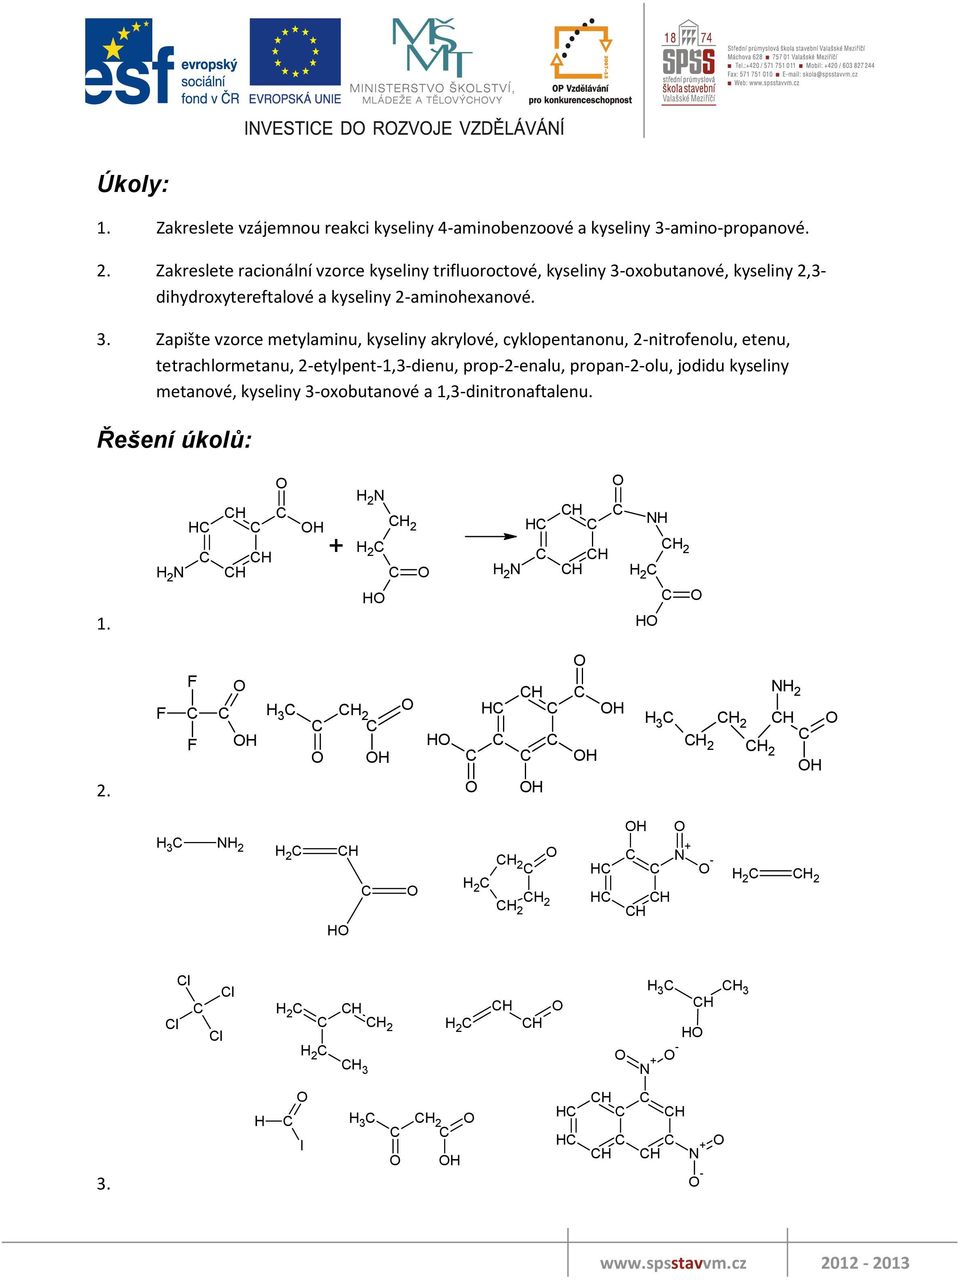 oxobutanové, kyseliny 2,3- dihydroxytereftalové a kyseliny 2-aminohexanové. 3.